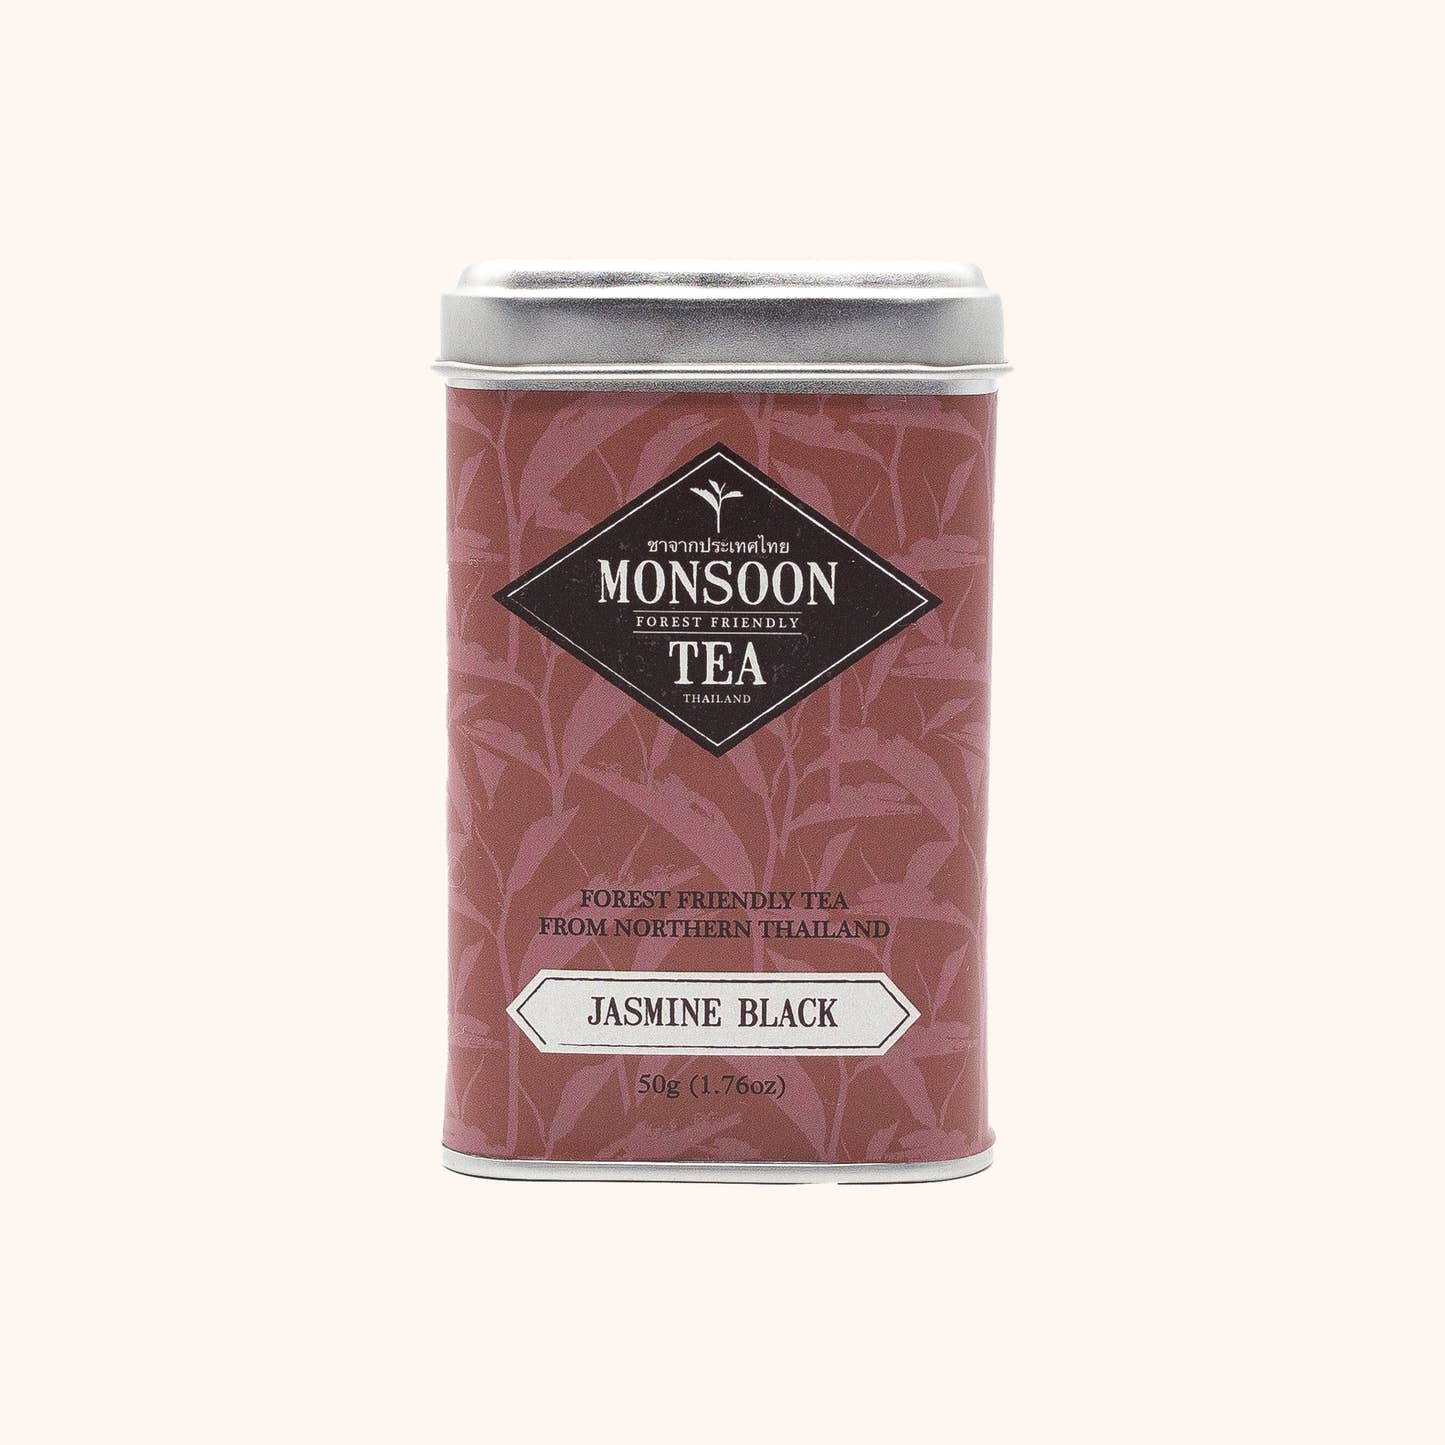 Jasmine Black by Monsoon Tea red loose leaf tea tin